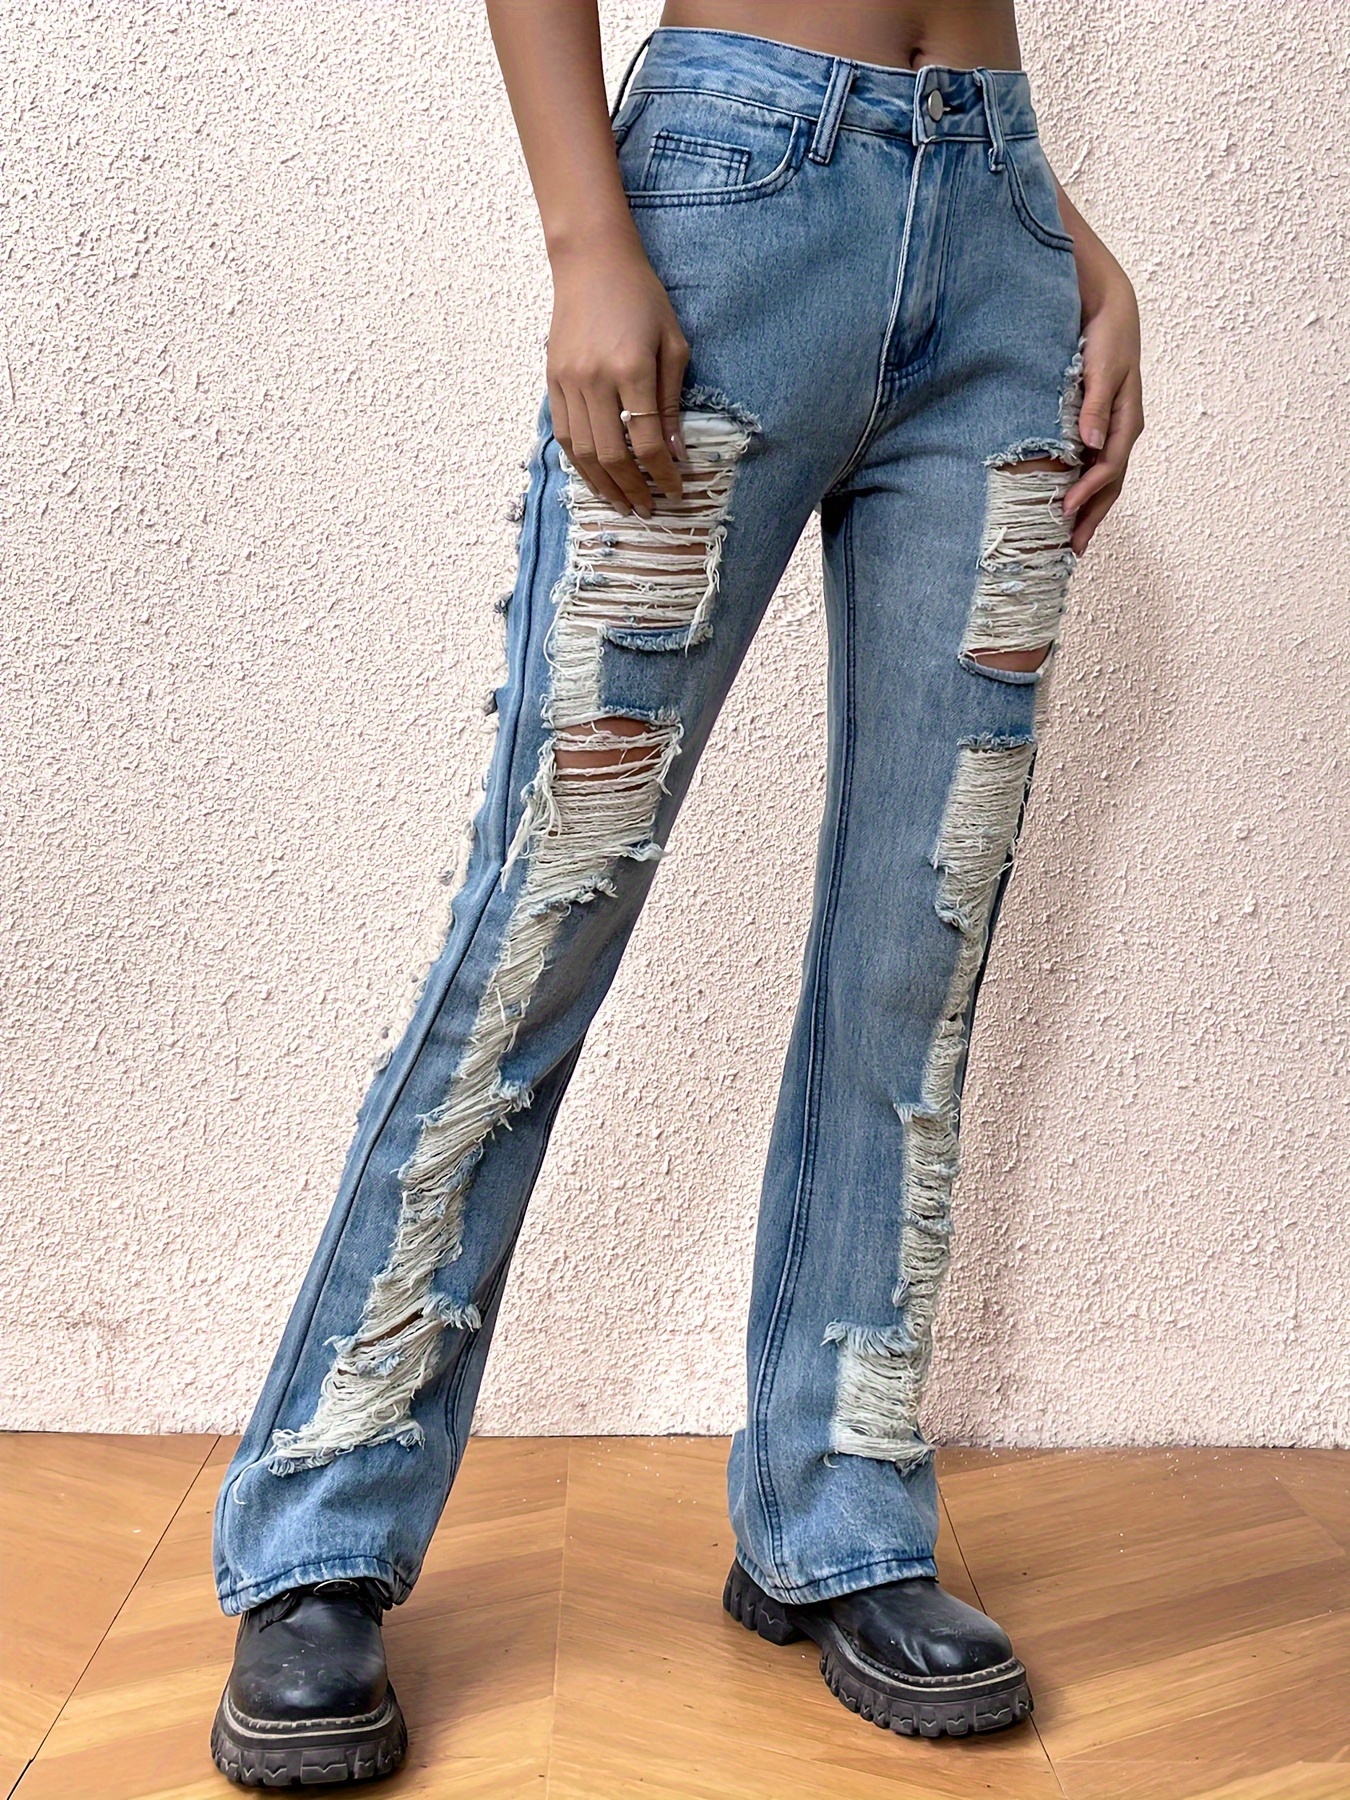 Ripped Knee Cut Distressed Jeans Light Wash Slash Pocket - Temu